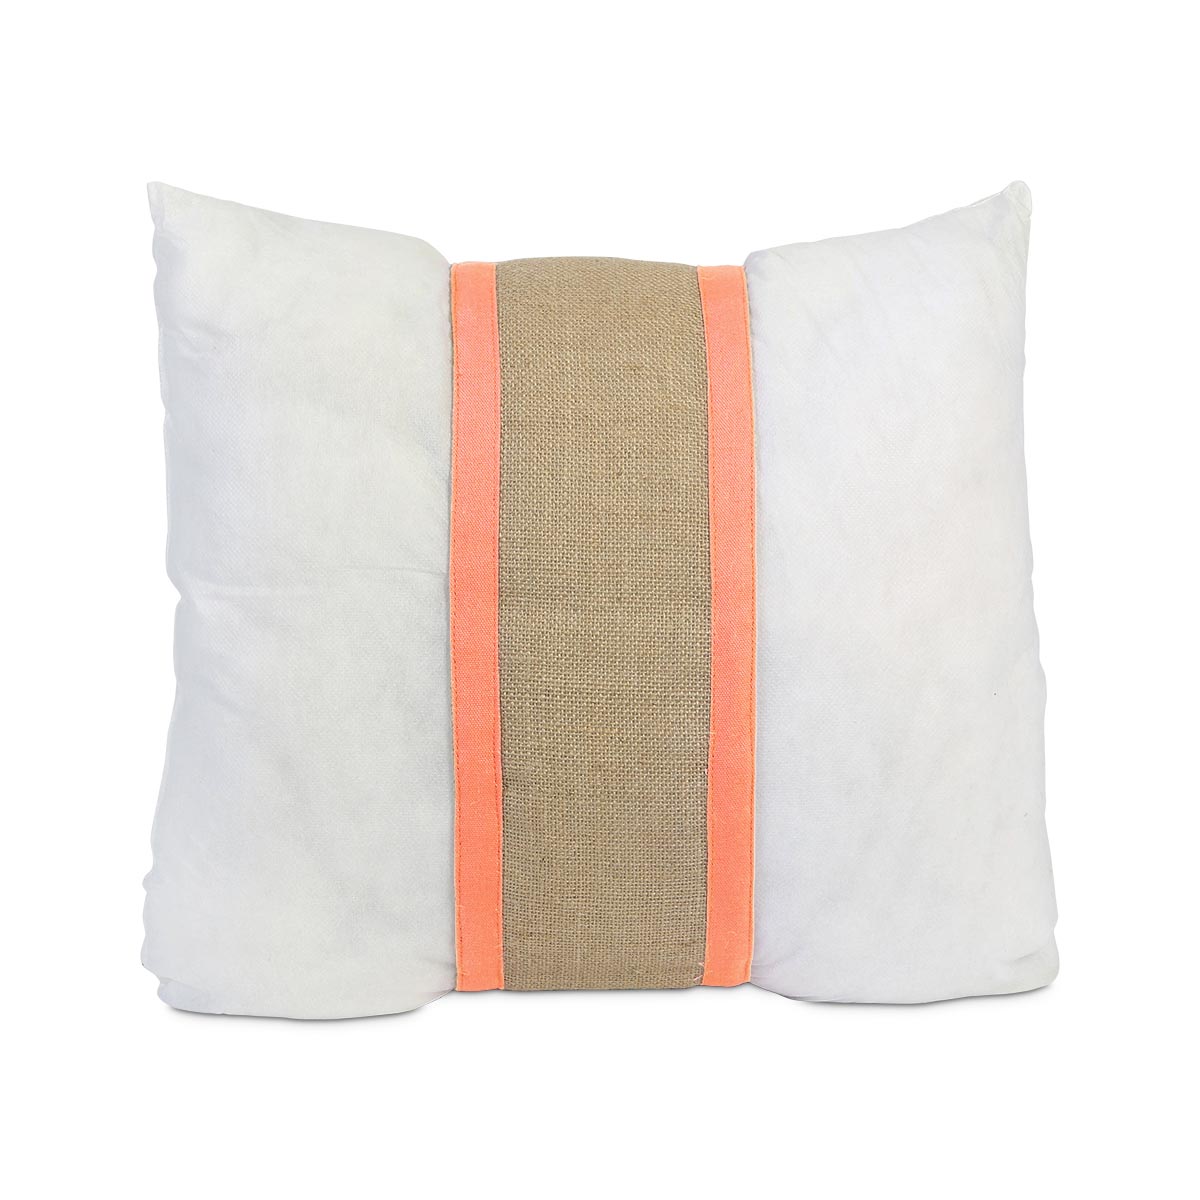 khaki jute pillow band w/ coral, fits standard 16